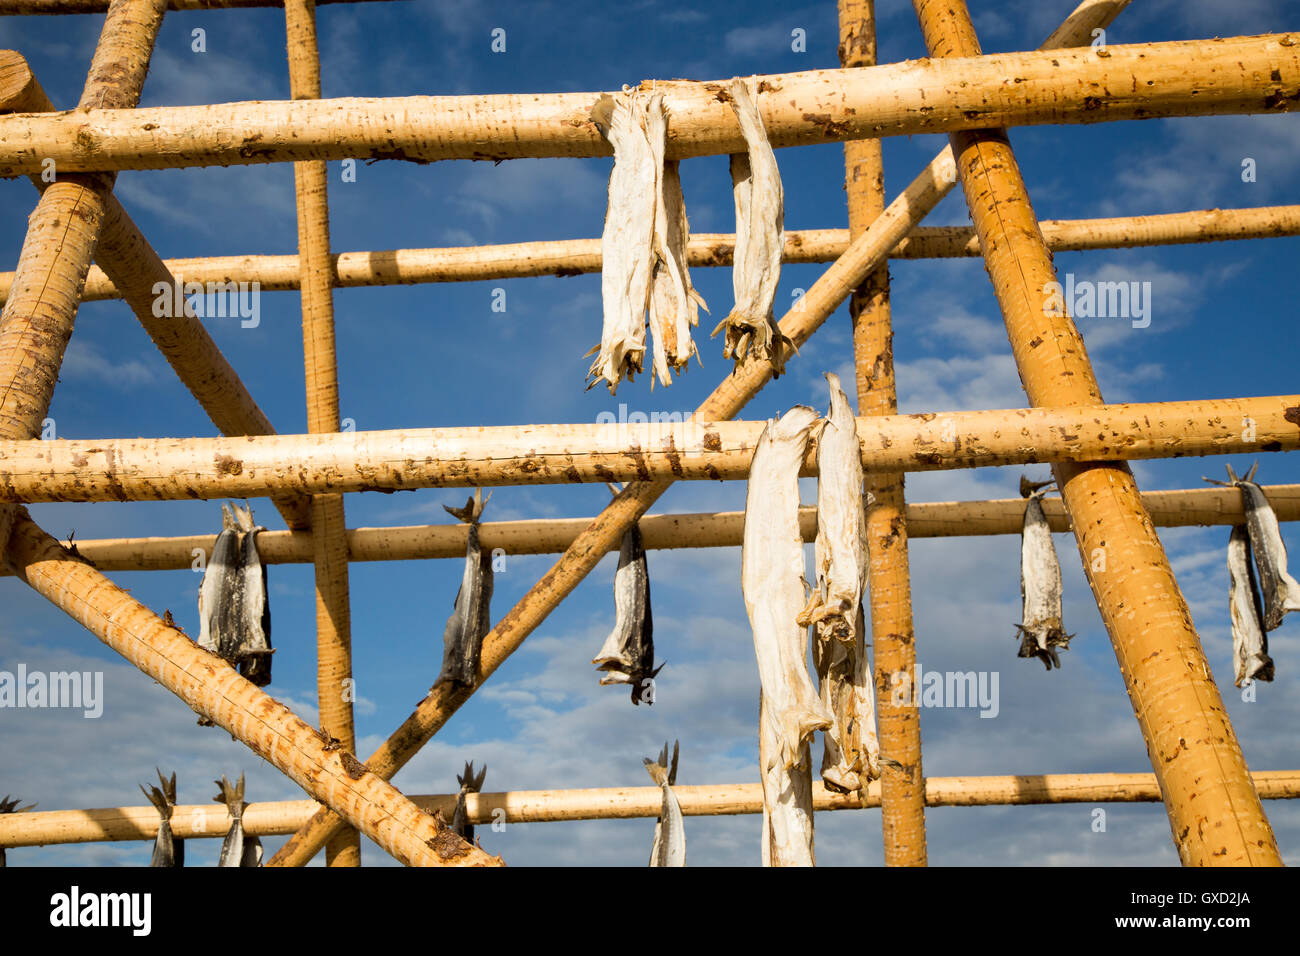 Merluzzo asciugando fuori sul palo di legno, Svolvaer, Isole Lofoten, Nordland, Norvegia Foto Stock